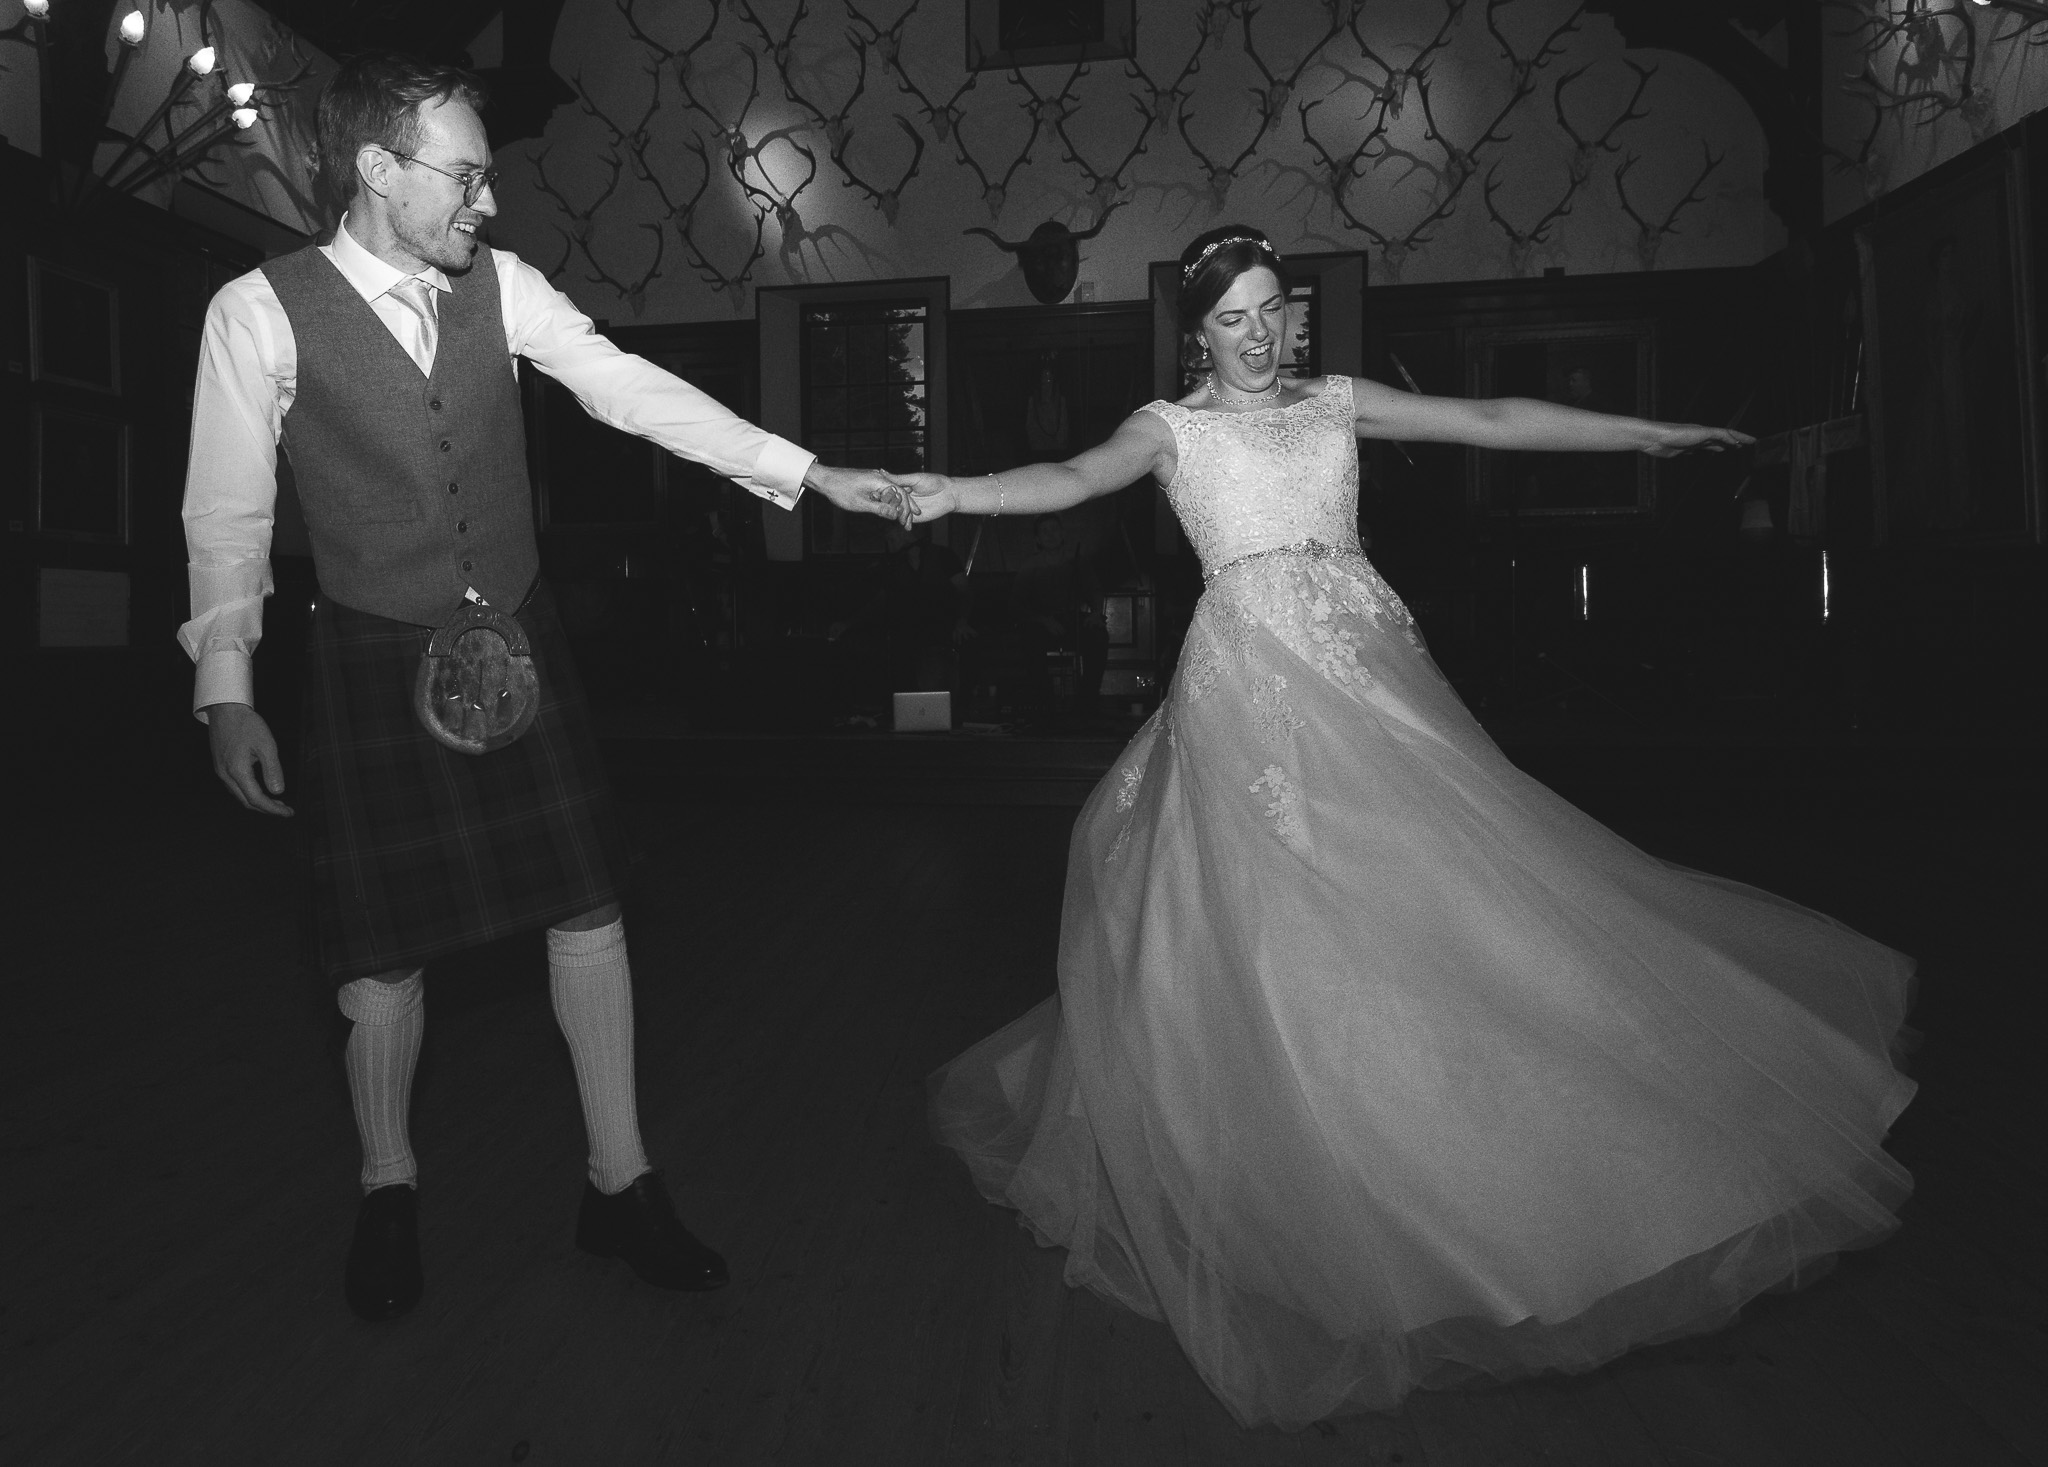 Couple dancing on wedding day